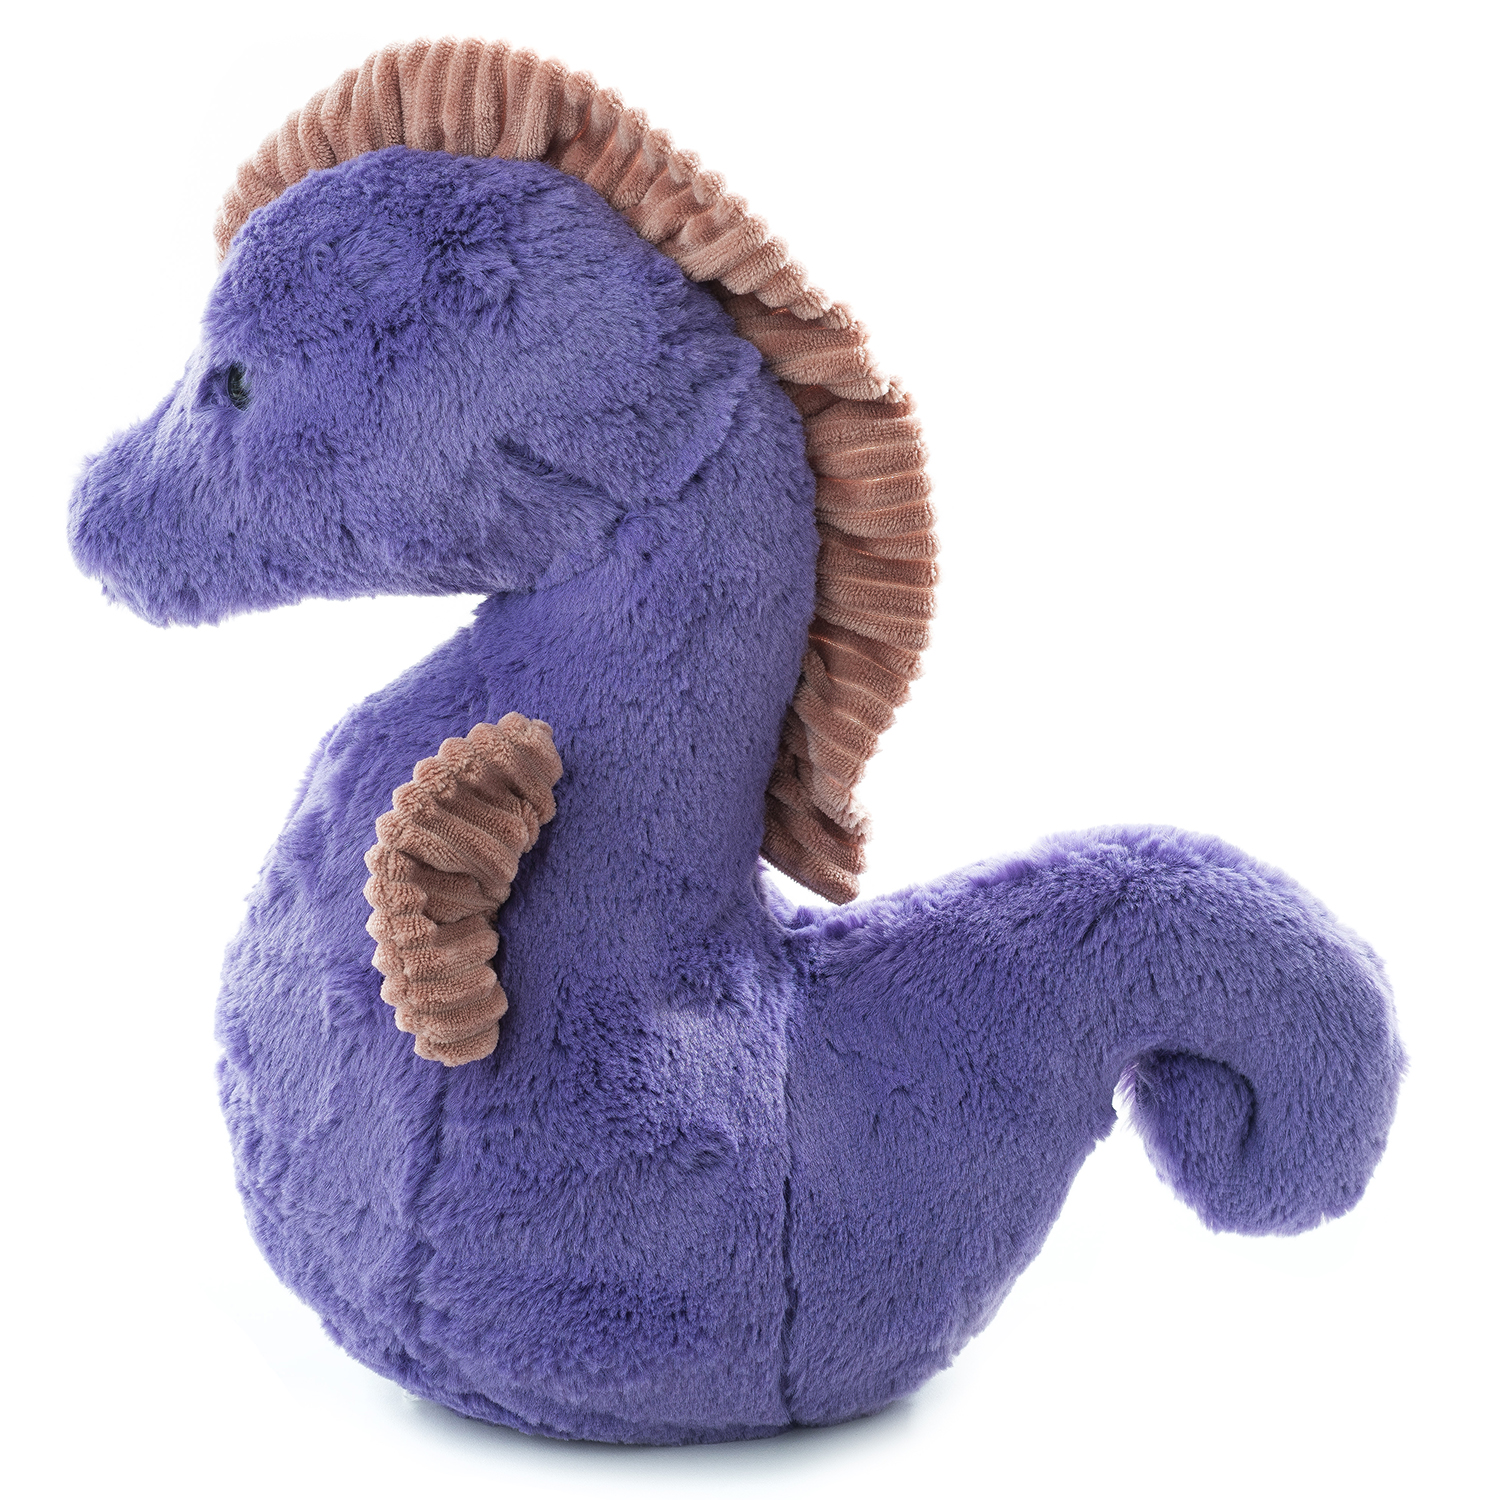 Игрушка мягконабивная Tallula Морской конёк 27 см фиолетовый - фото 3